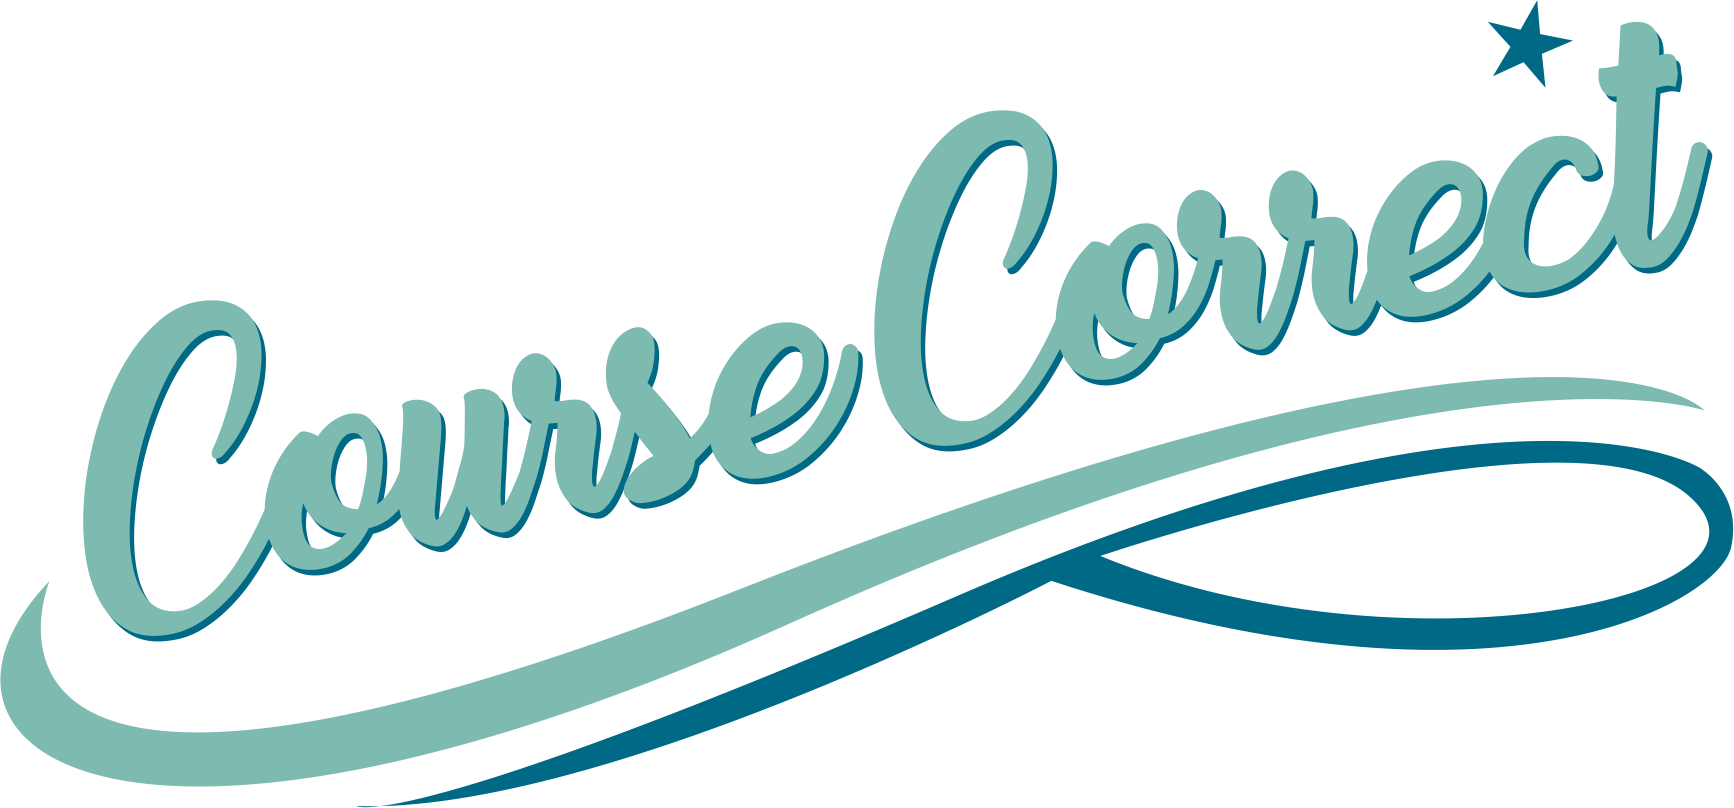 Course Correct logo